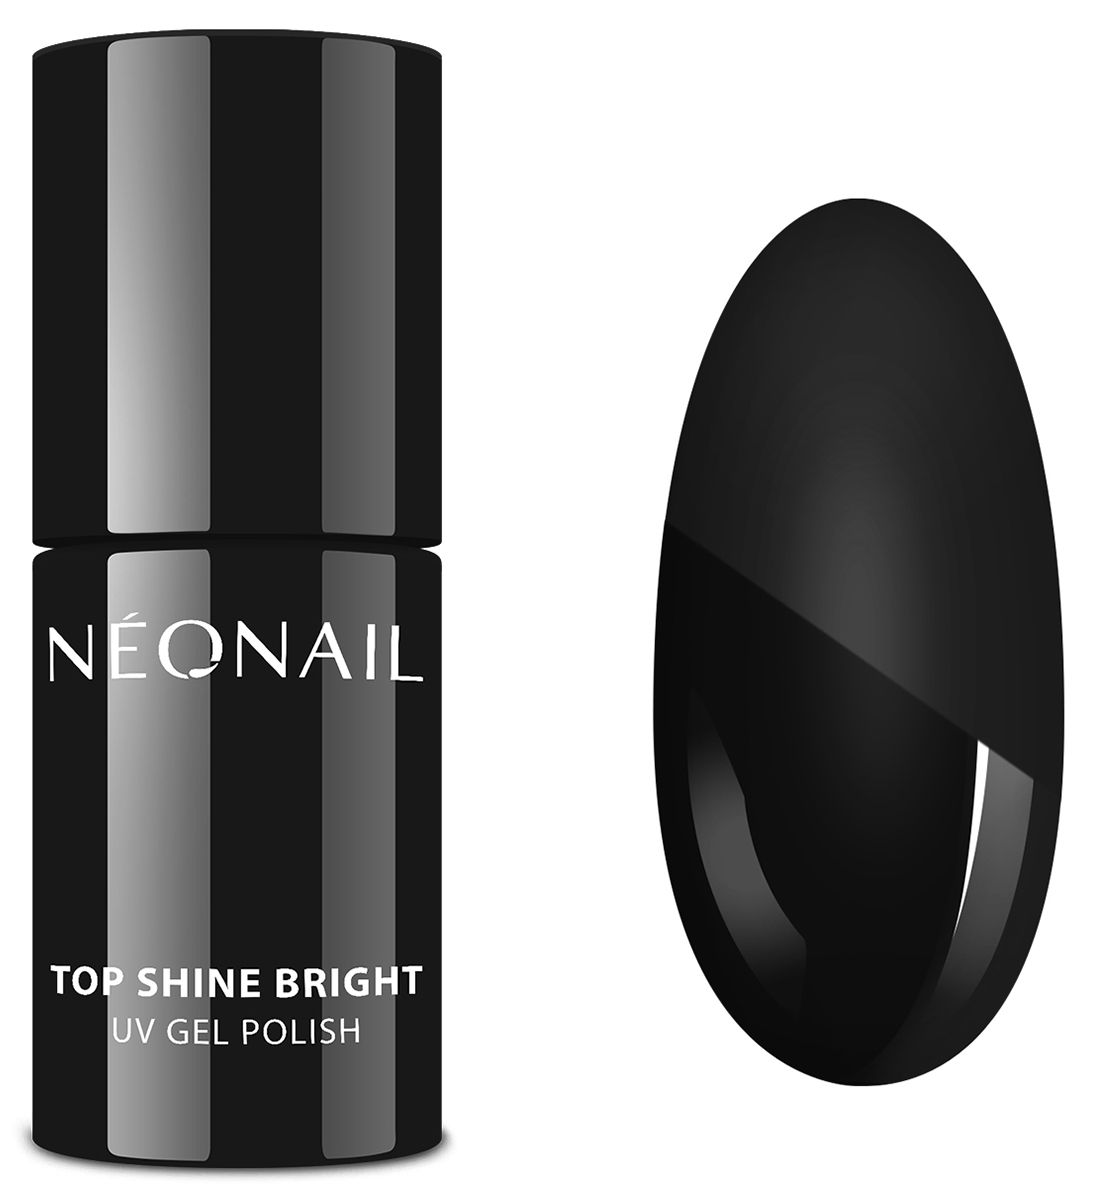 Neonail Top Shine Bright верхнее покрытие для ногтей, 7.2 ml